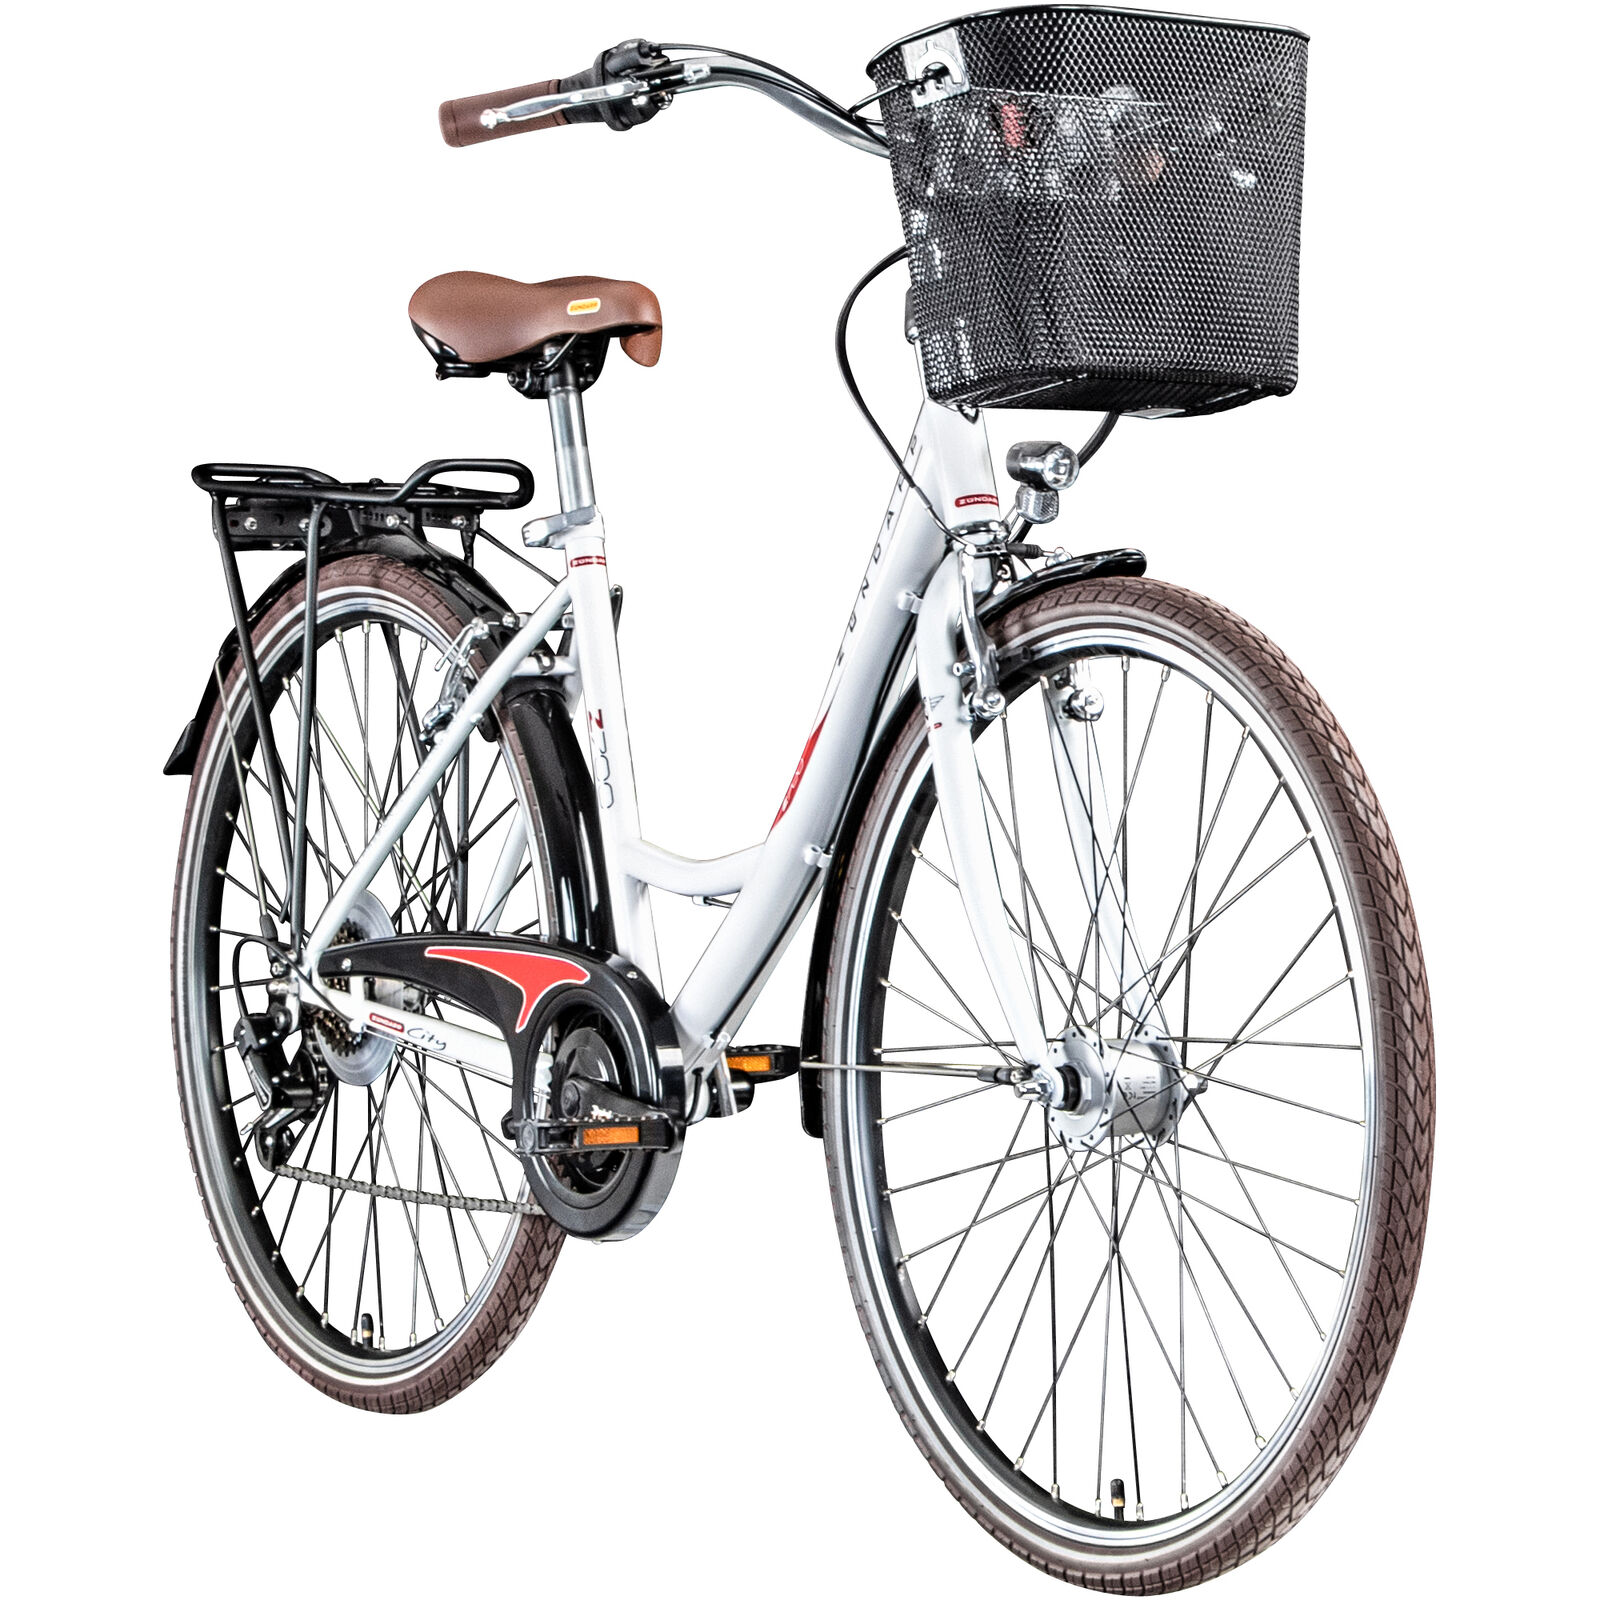 Zündapp Z700 Fahrradlenker Damenrad 600 mm ergonomischer Fahrrad